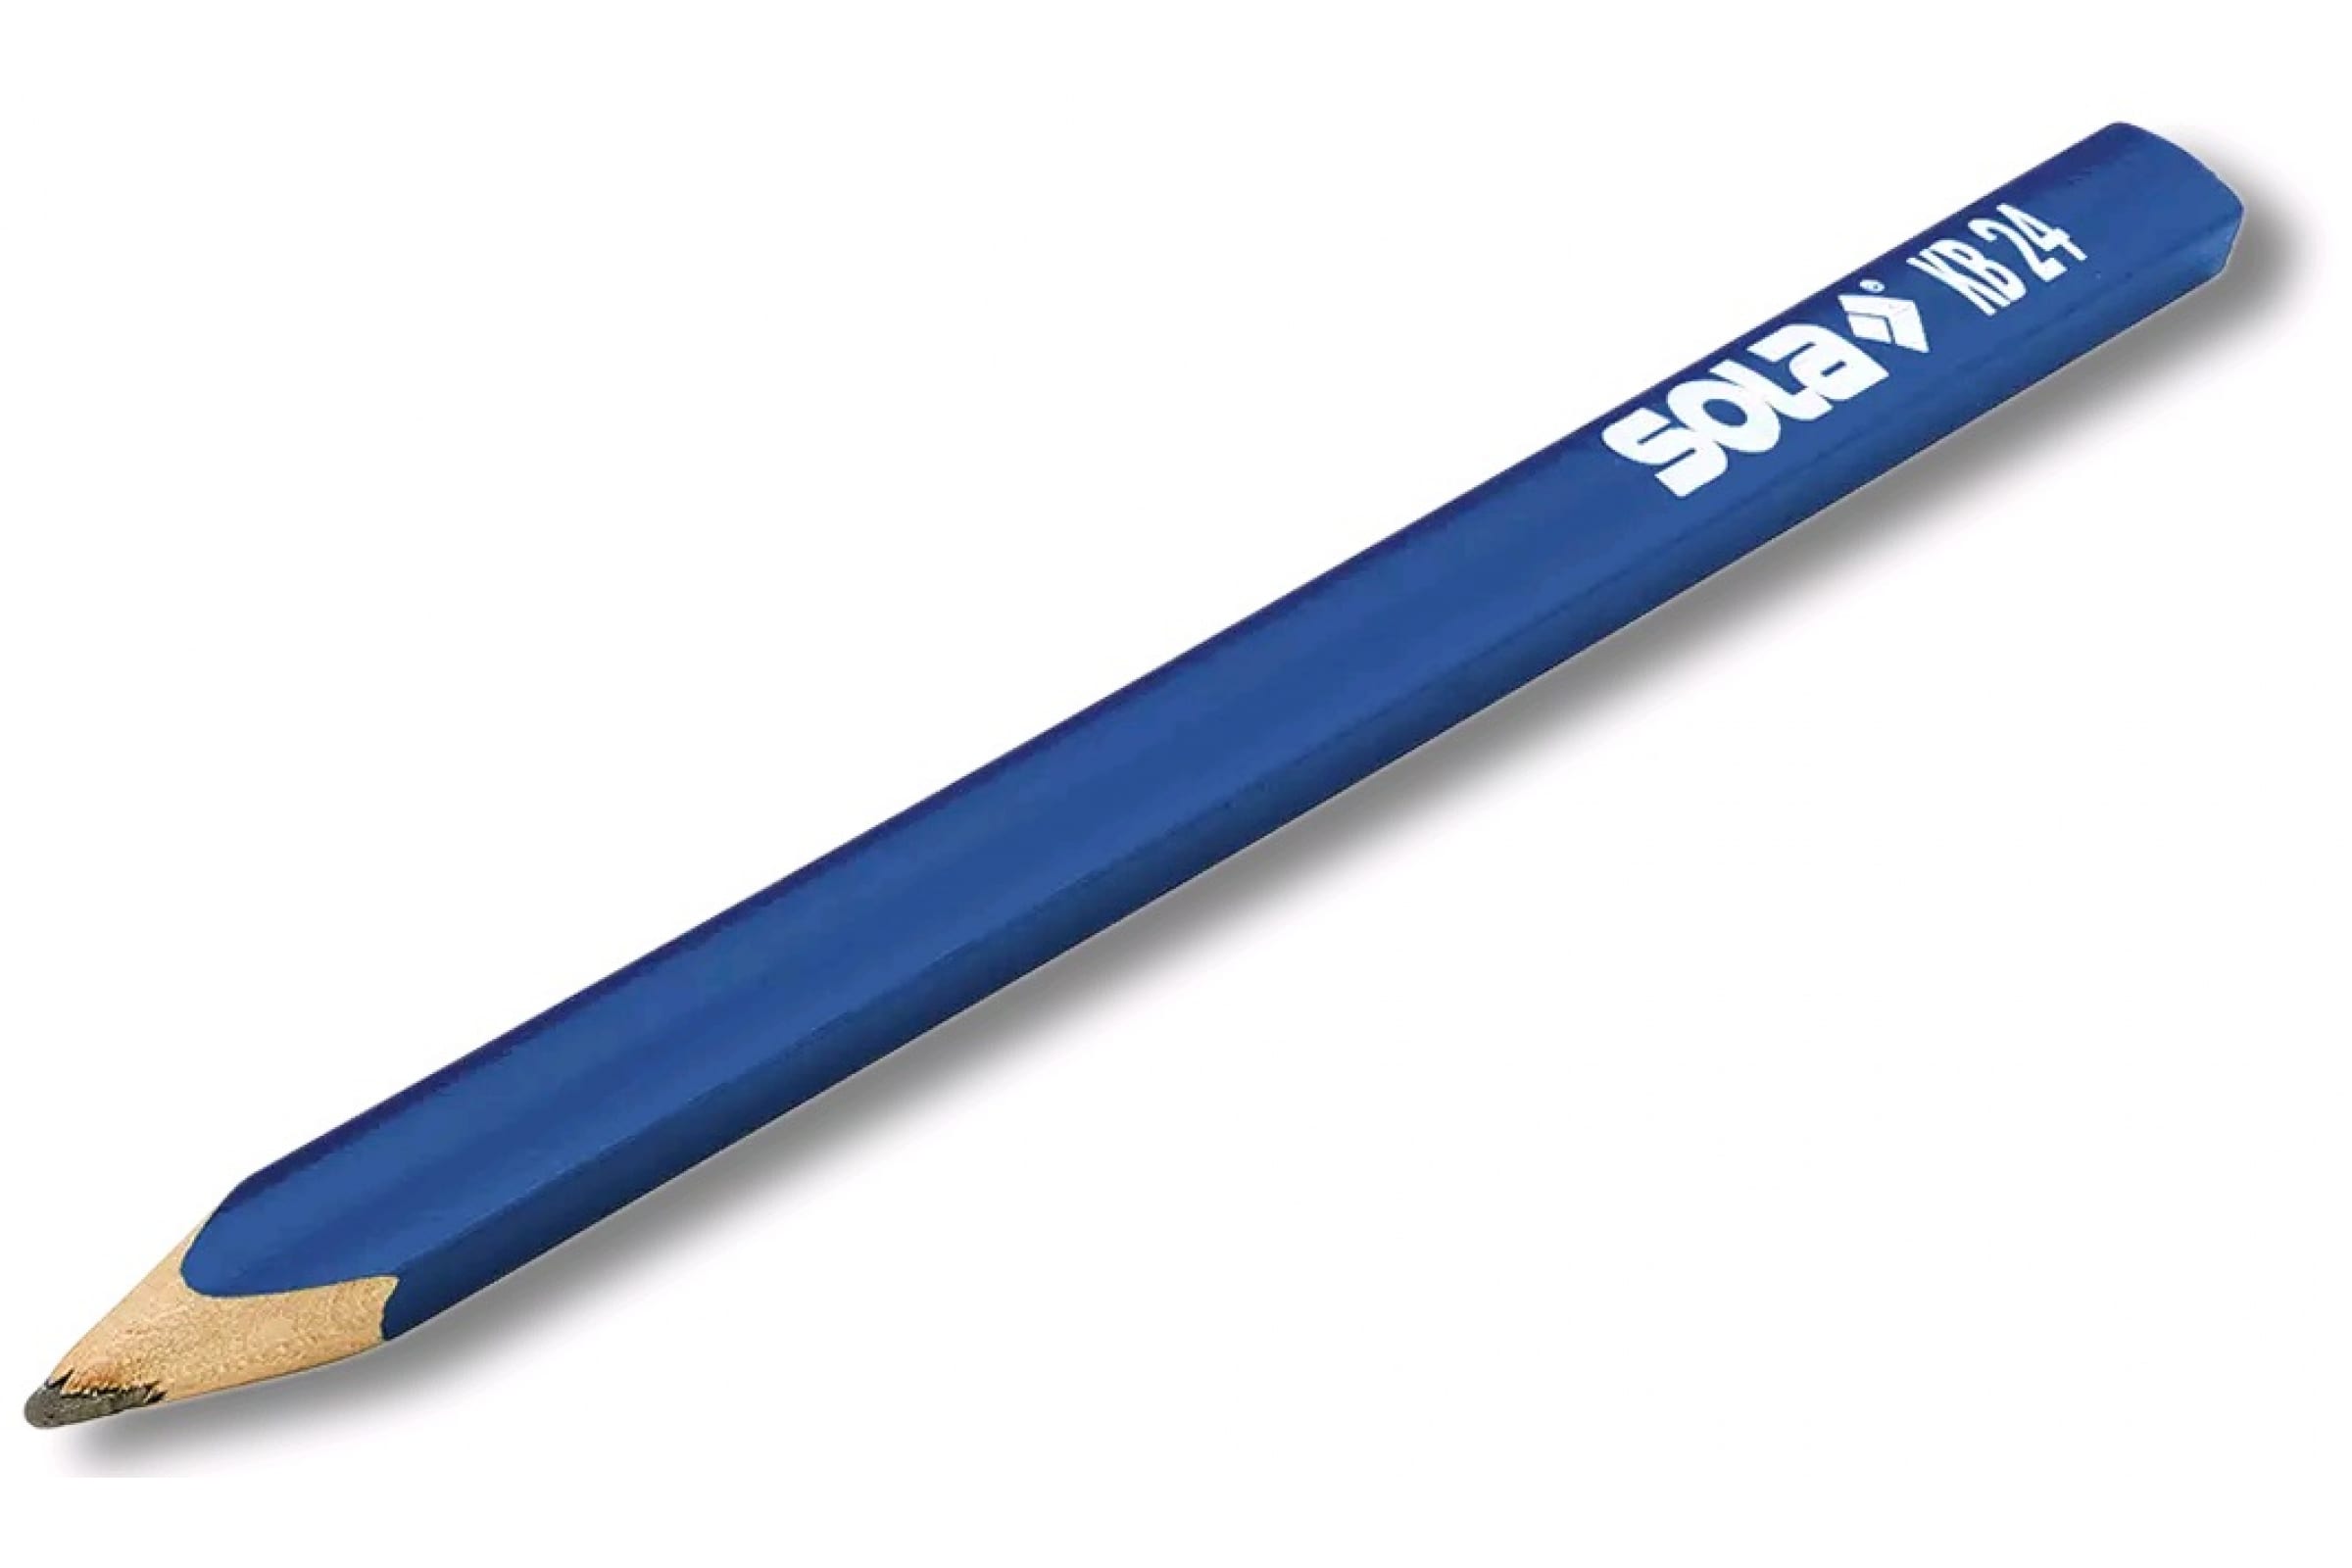 SOLA Карандаш KB 24 для влажных поверхностей 66012520 карандаш для влажных поверхностей sola